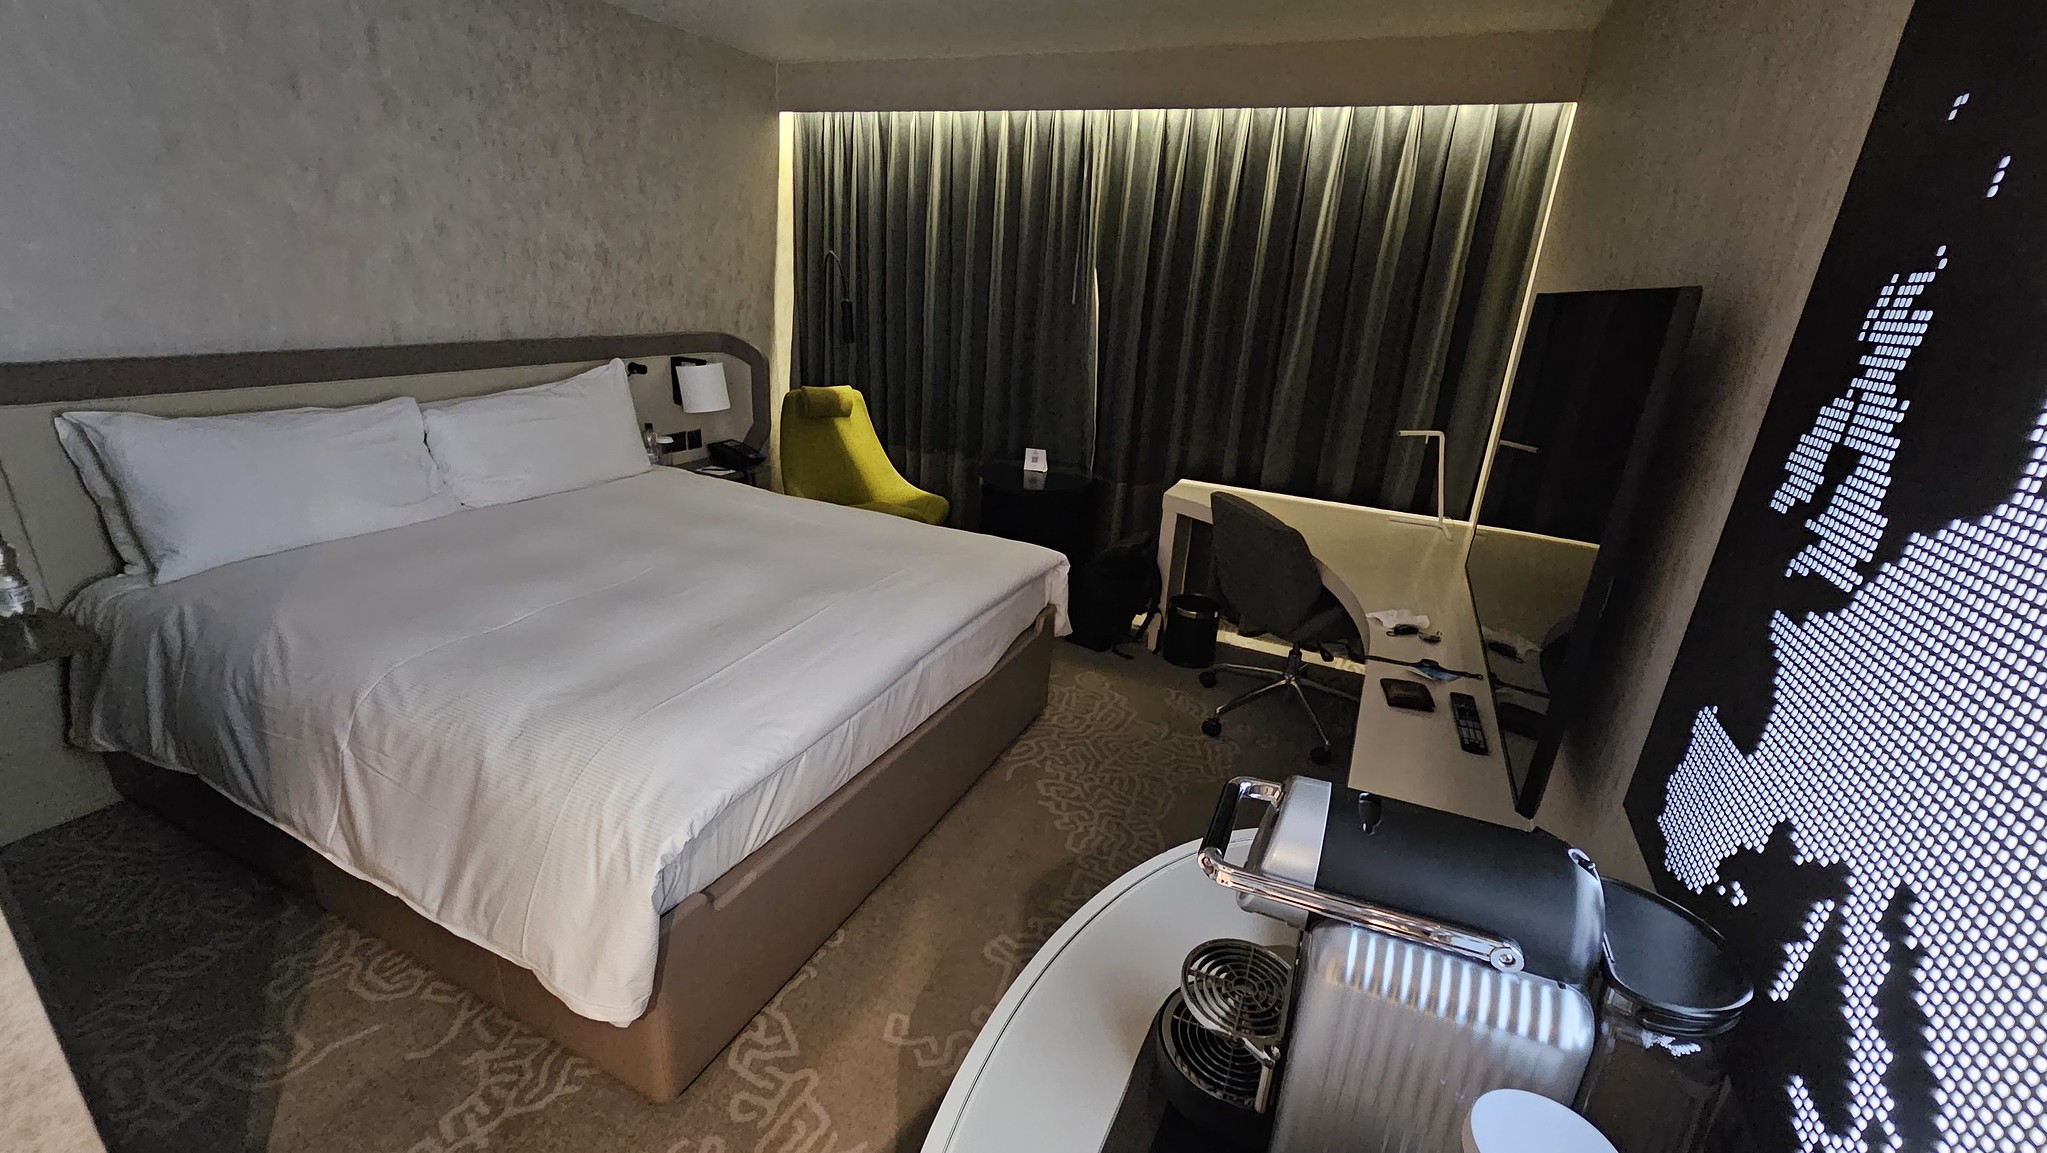 Room 460 at the Hilton Heathrow T4